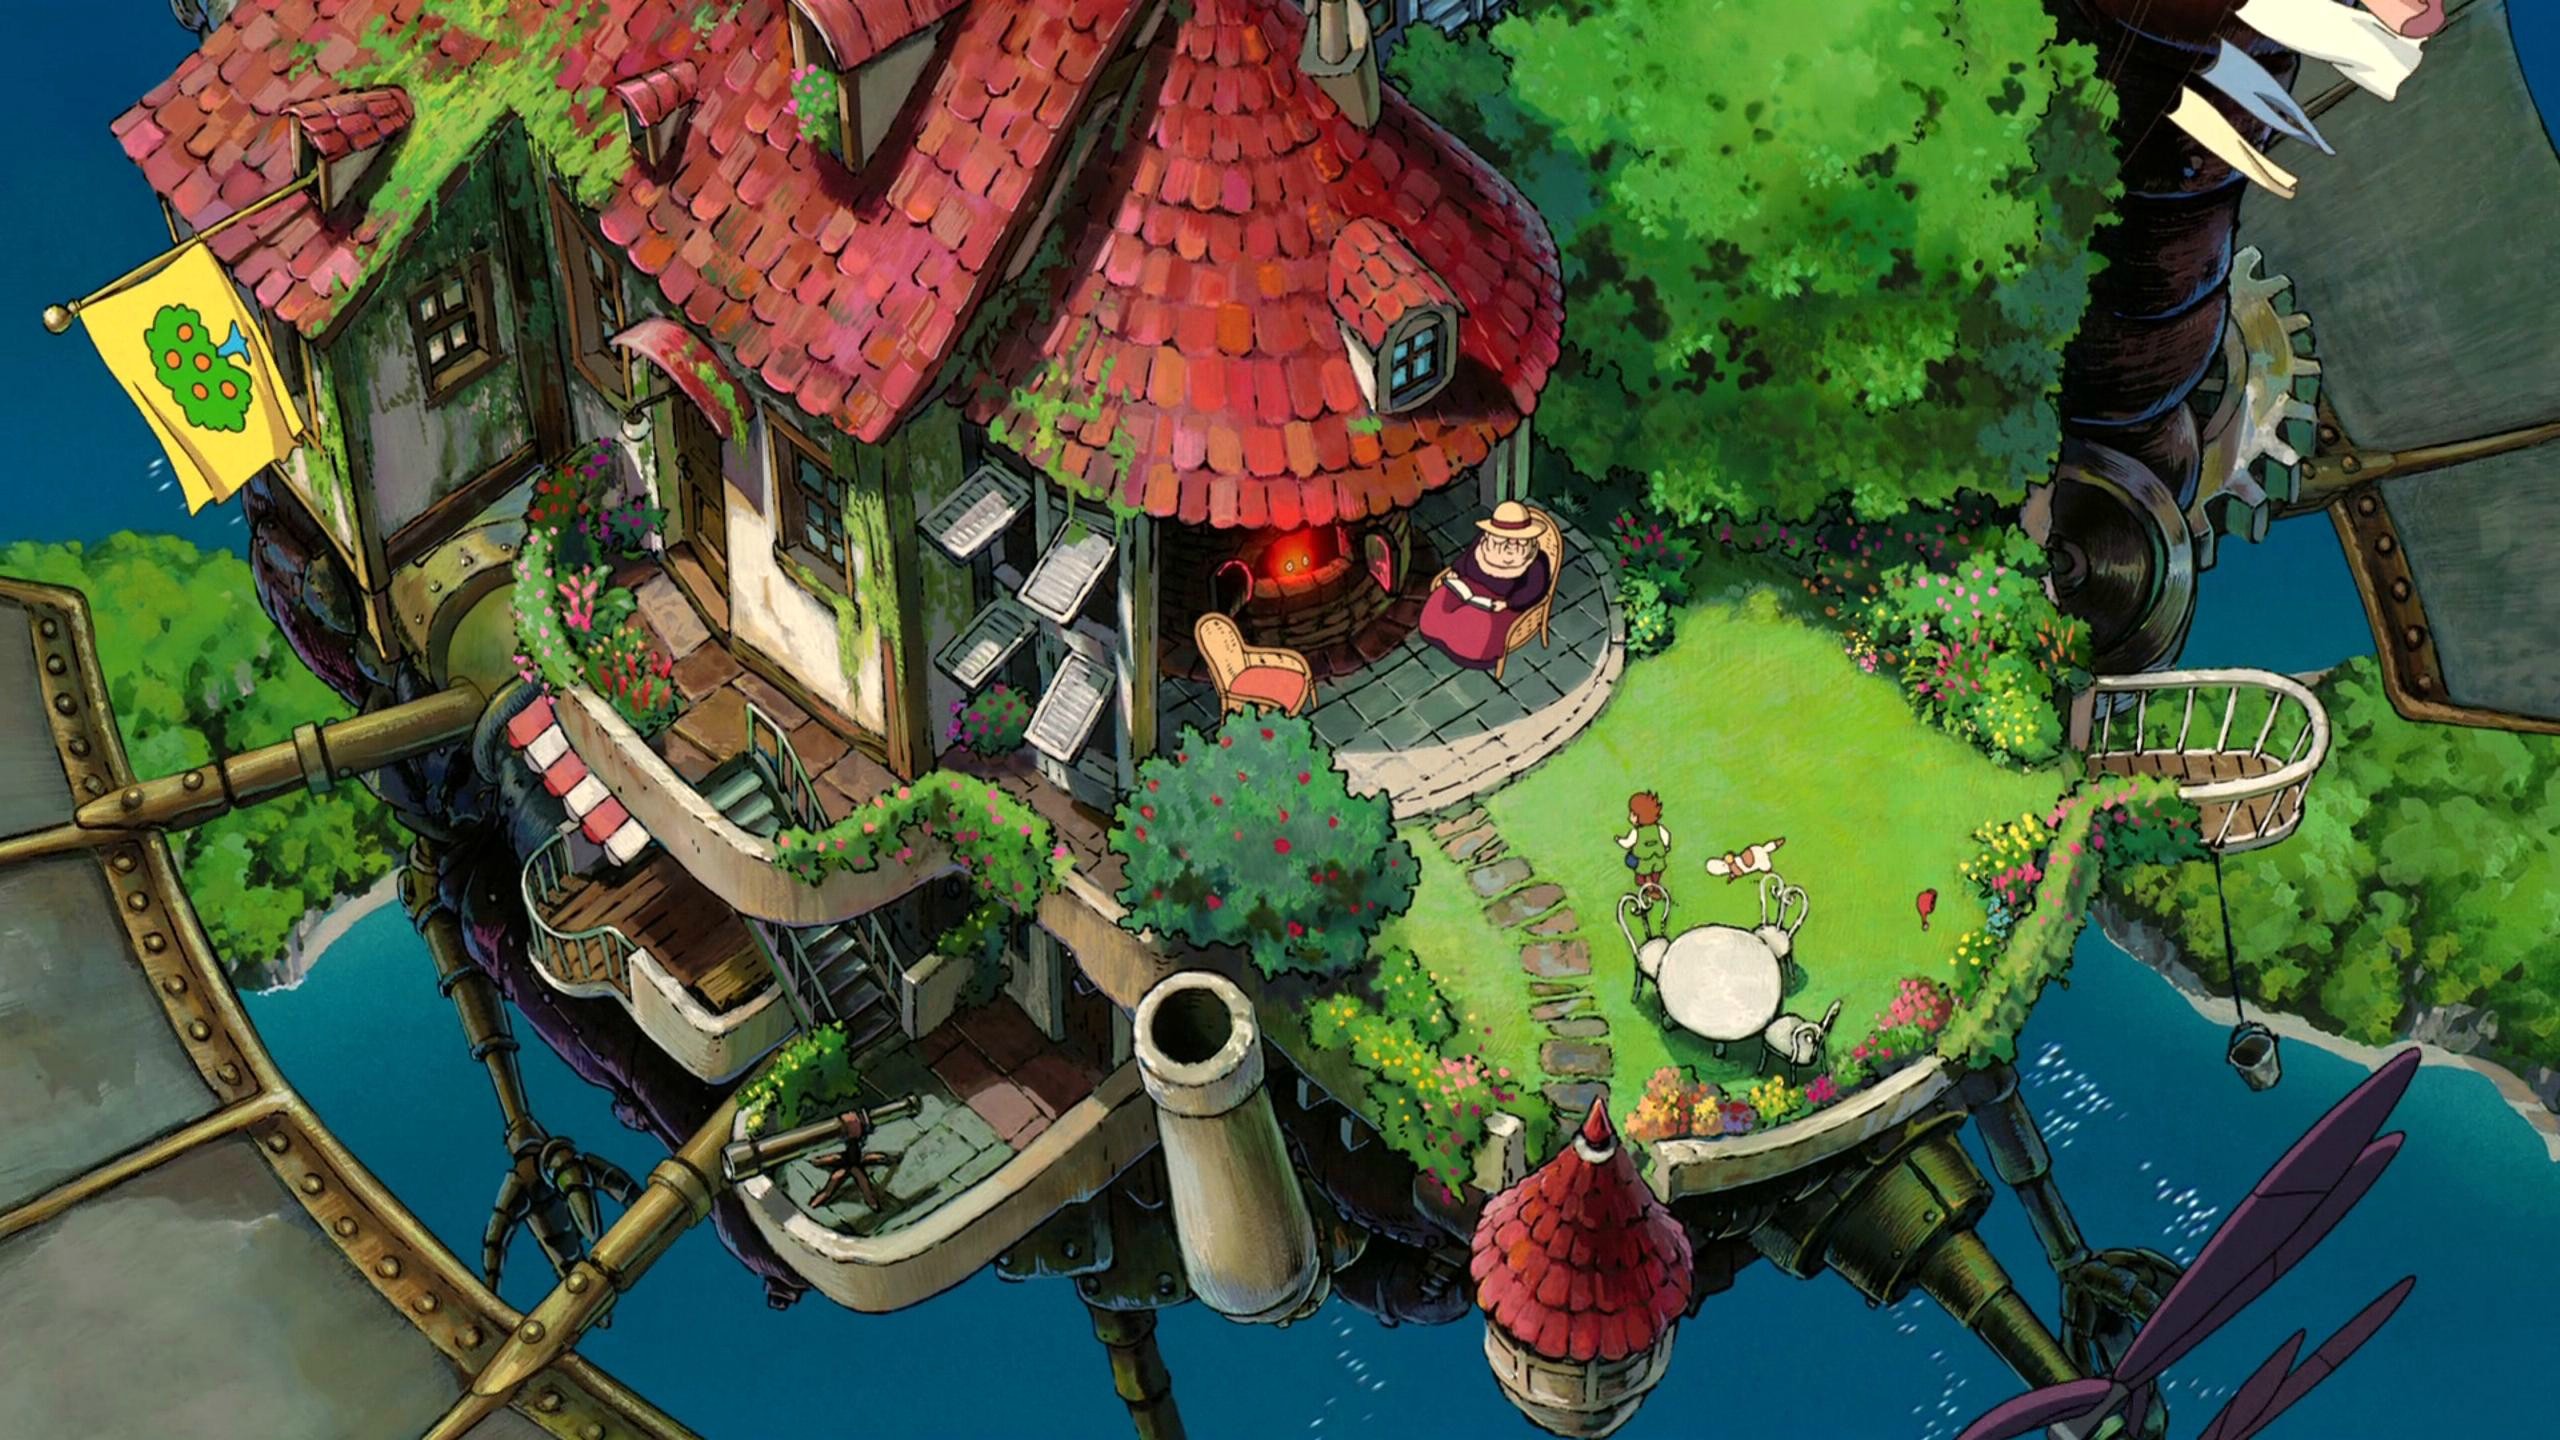 2560x1440 Studio Ghibli Backgrounds